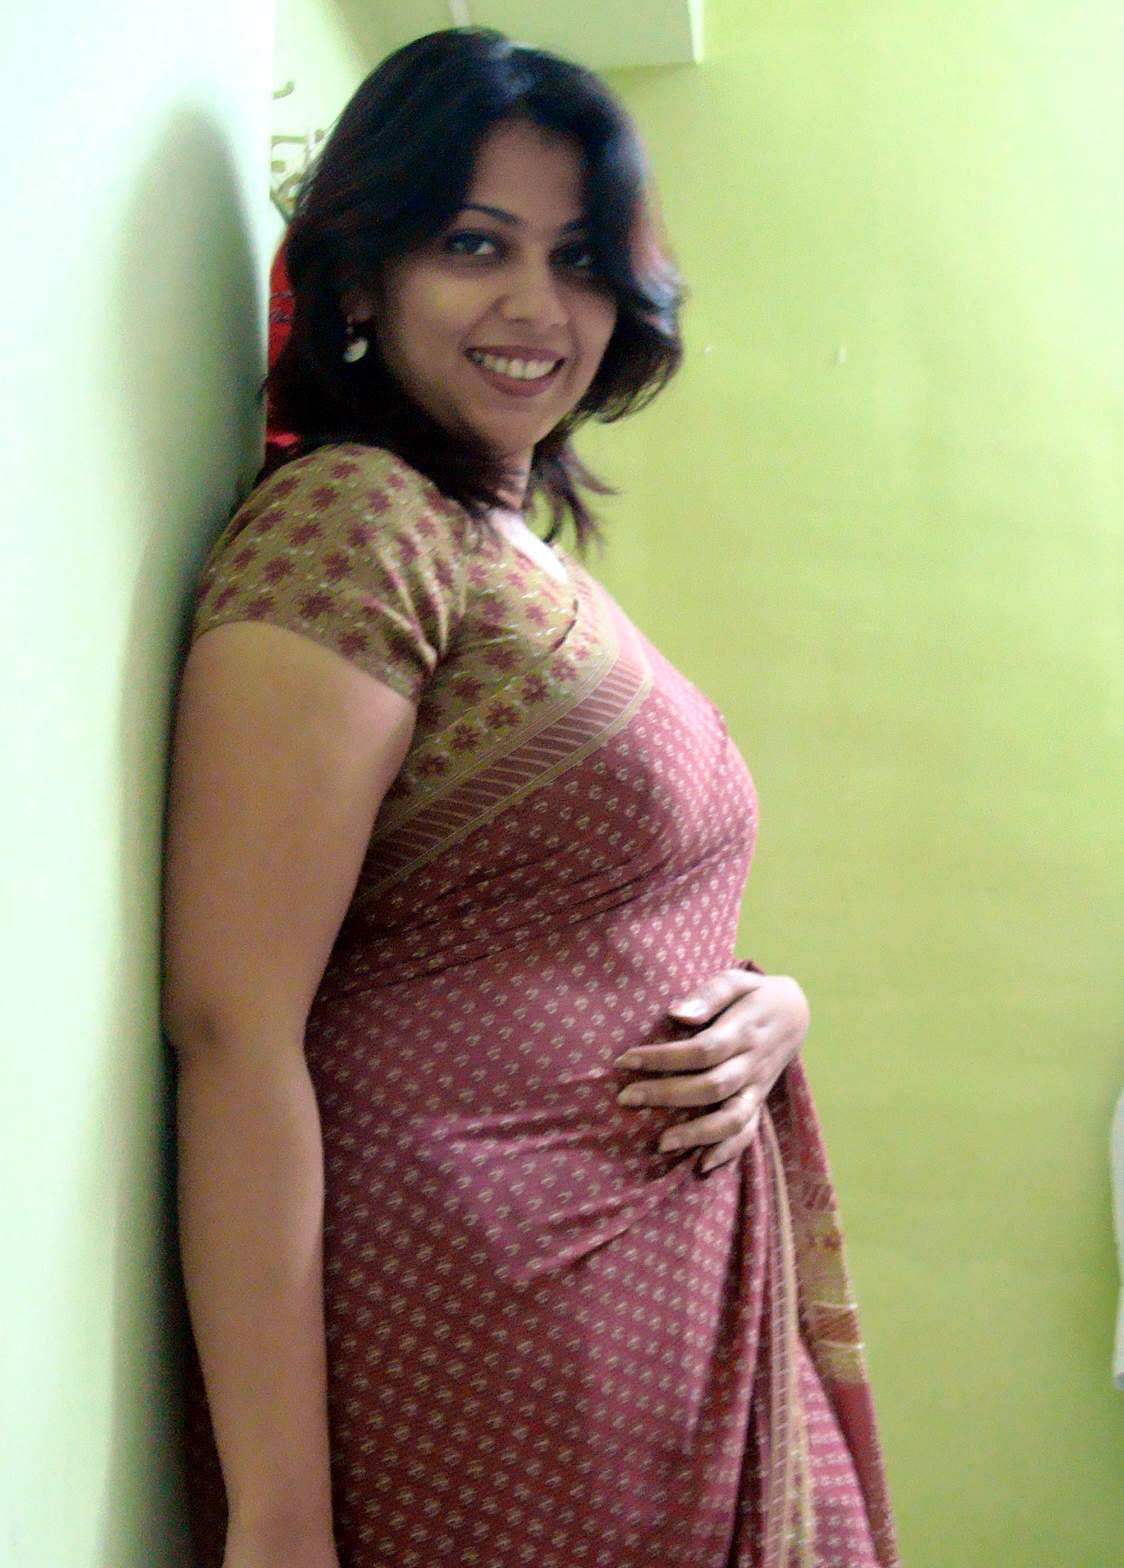 Hot Telugu Bhabhi Big Boobs Bedroom Sexy Girls Photos - Big Ass ...